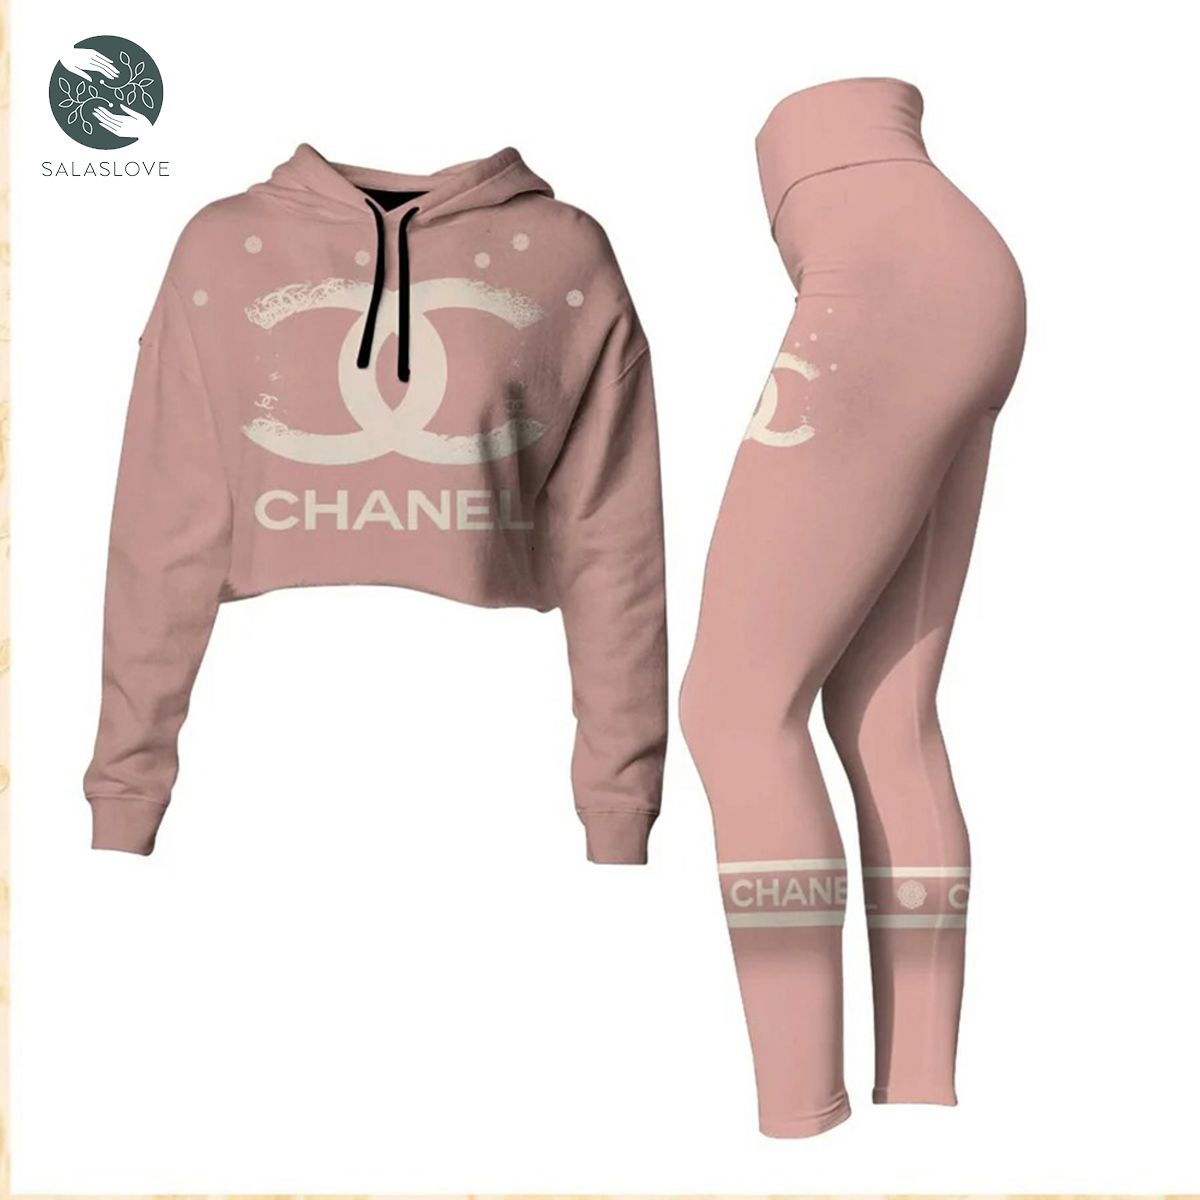 Chanel Pink Croptop Hoodie Leggings